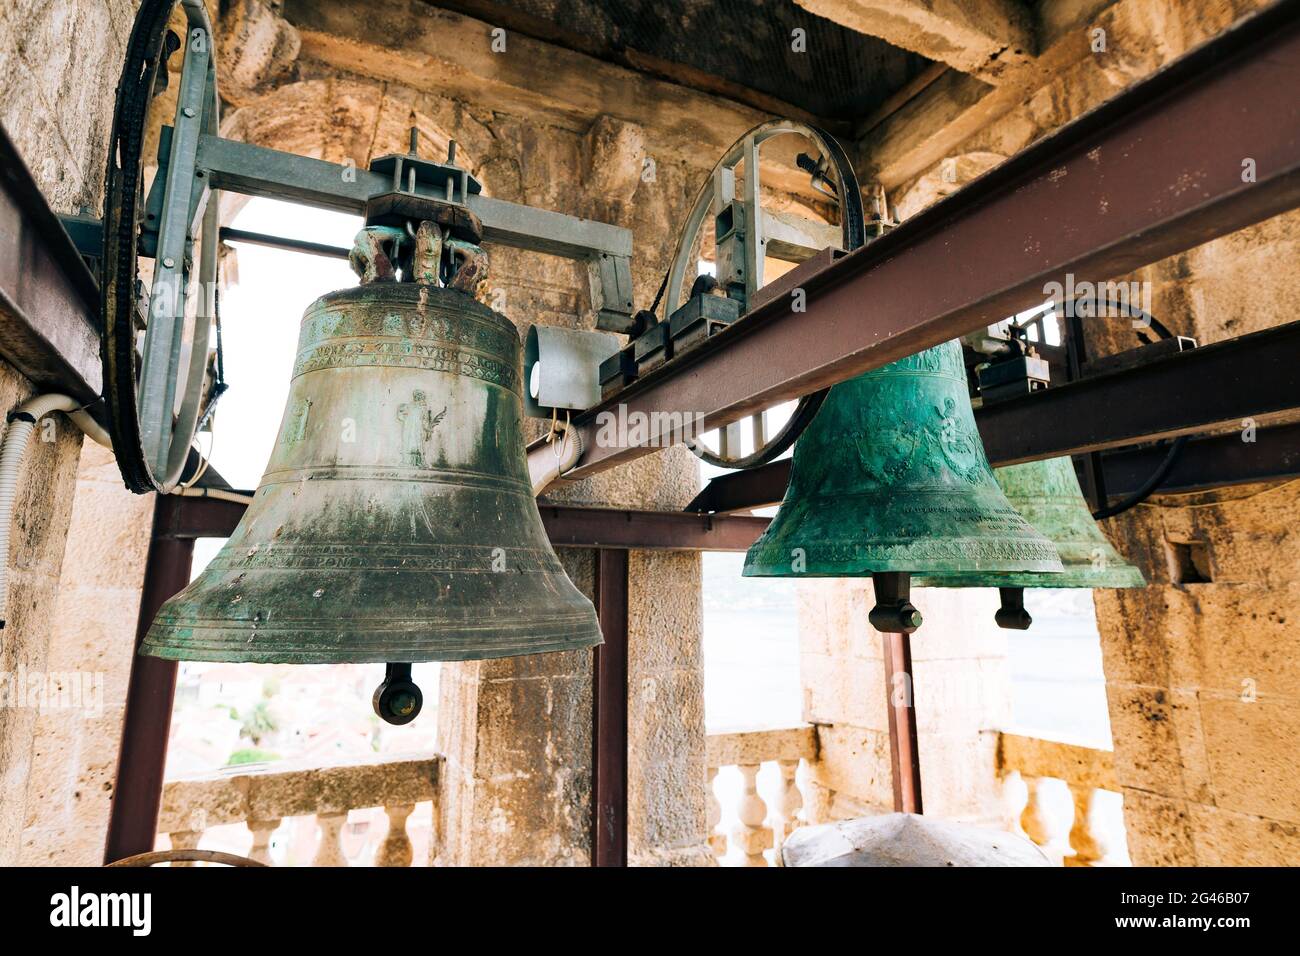 Die Glocken in der Kapelle. Alte große Glocken im Glockentau Stockfoto